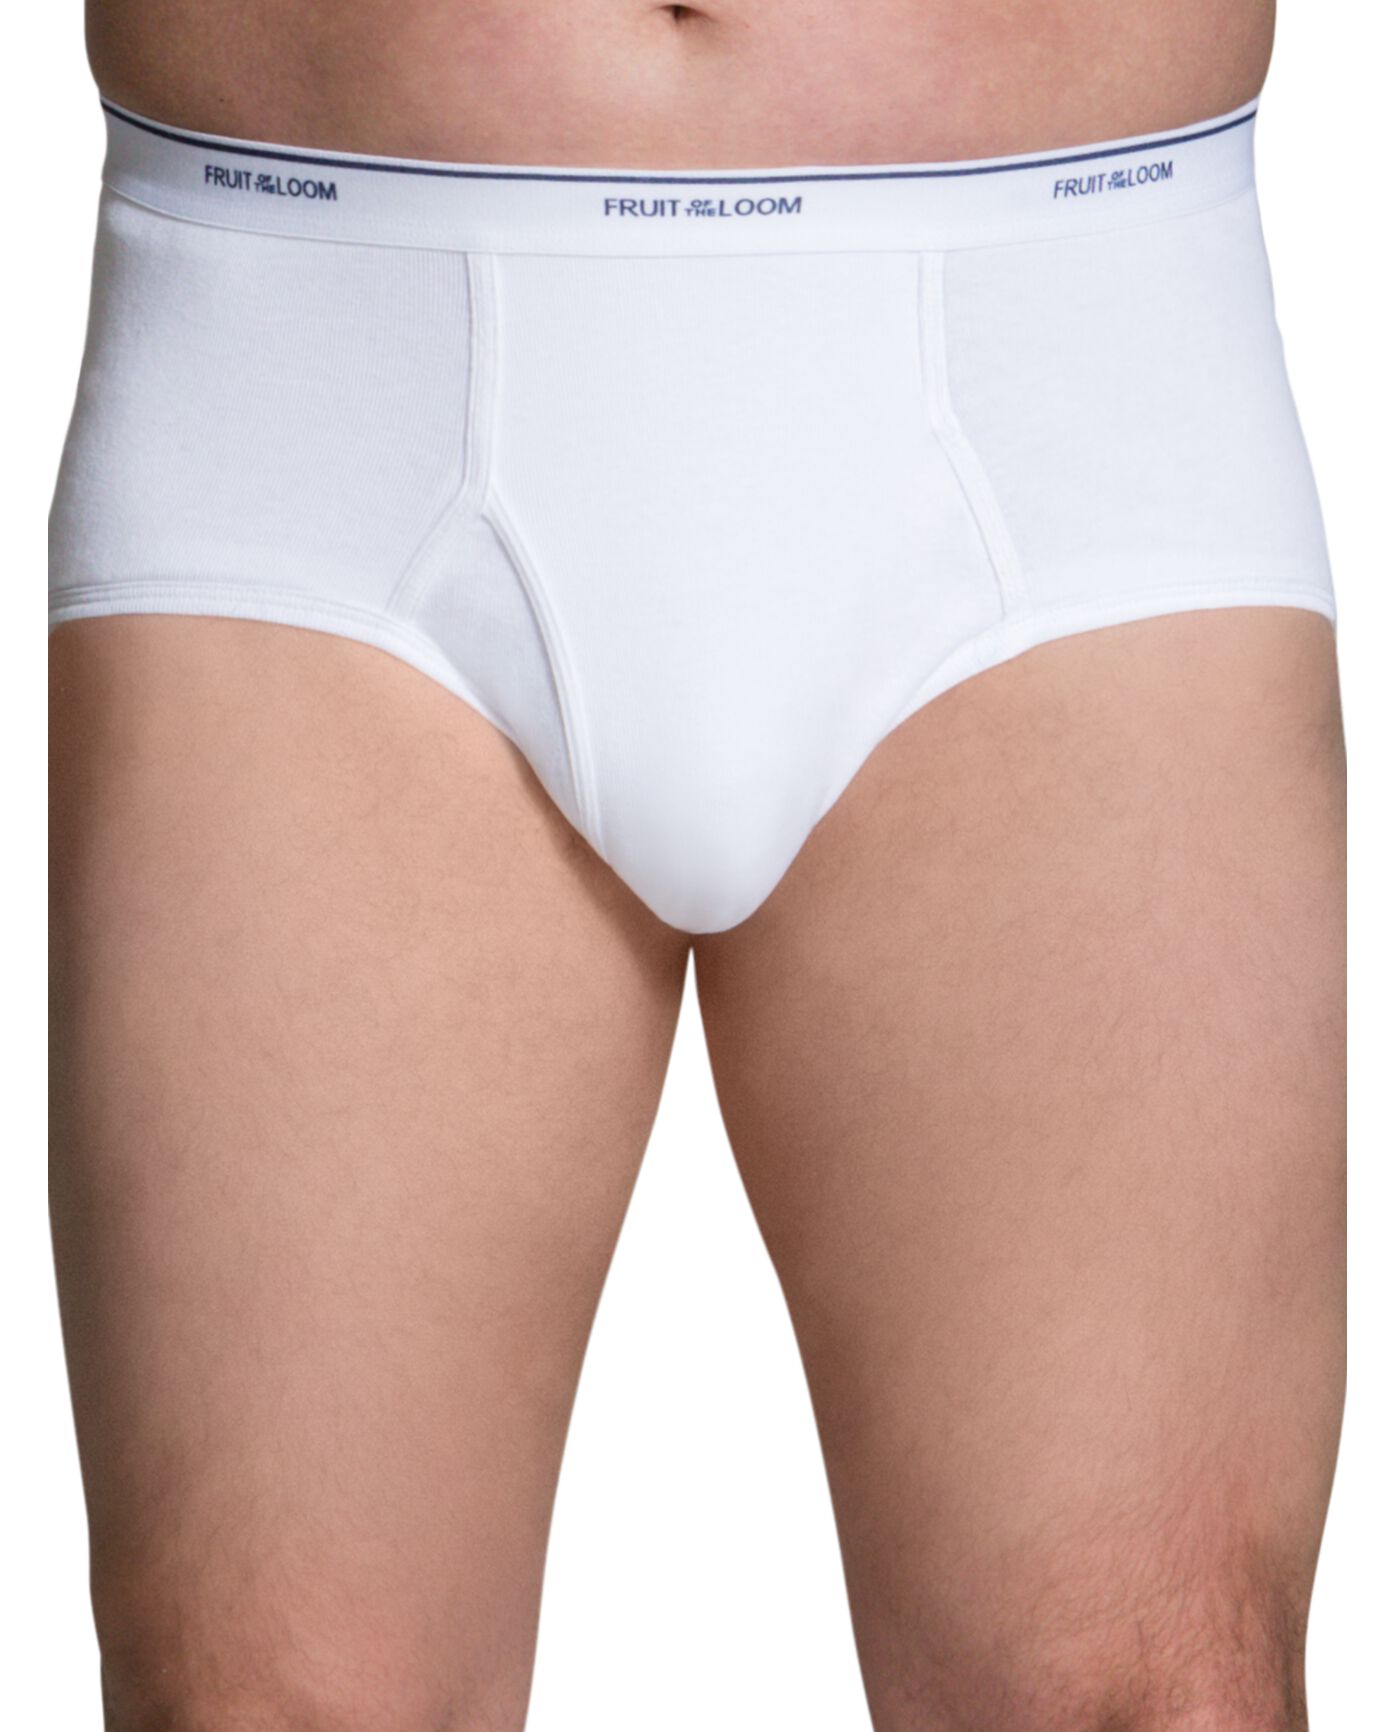 3 Hanes Underwear Briefs White Men Comfort Flex 3XL Tighty Whites